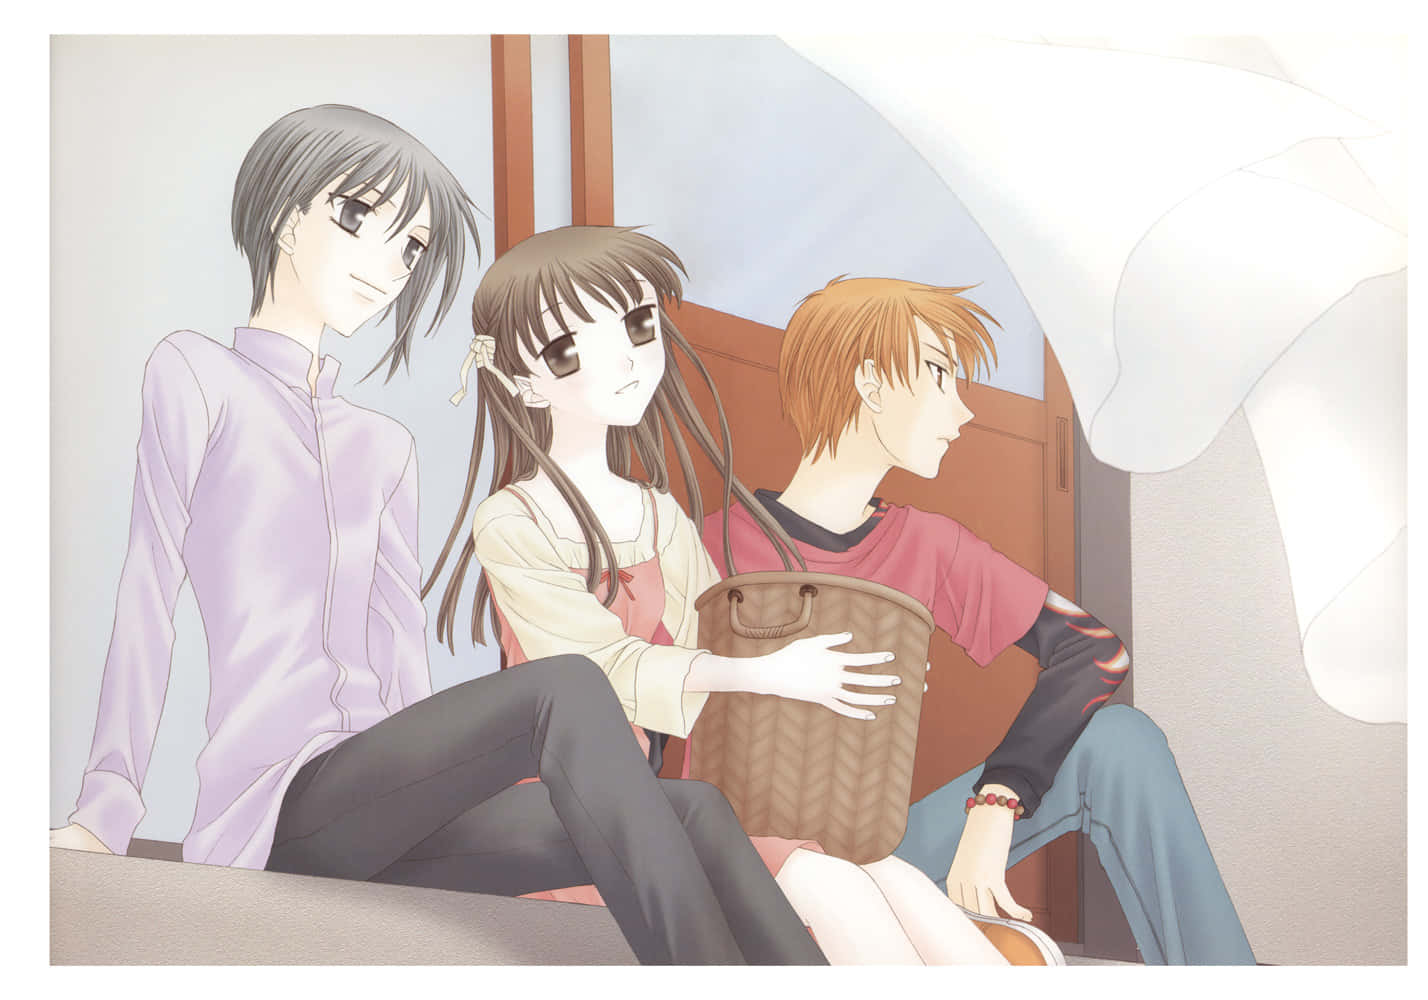 Yuki,tohru Och Kyo Sitter På En Mobilbakgrund Med Motiv Från Fruits Basket-anime. Wallpaper